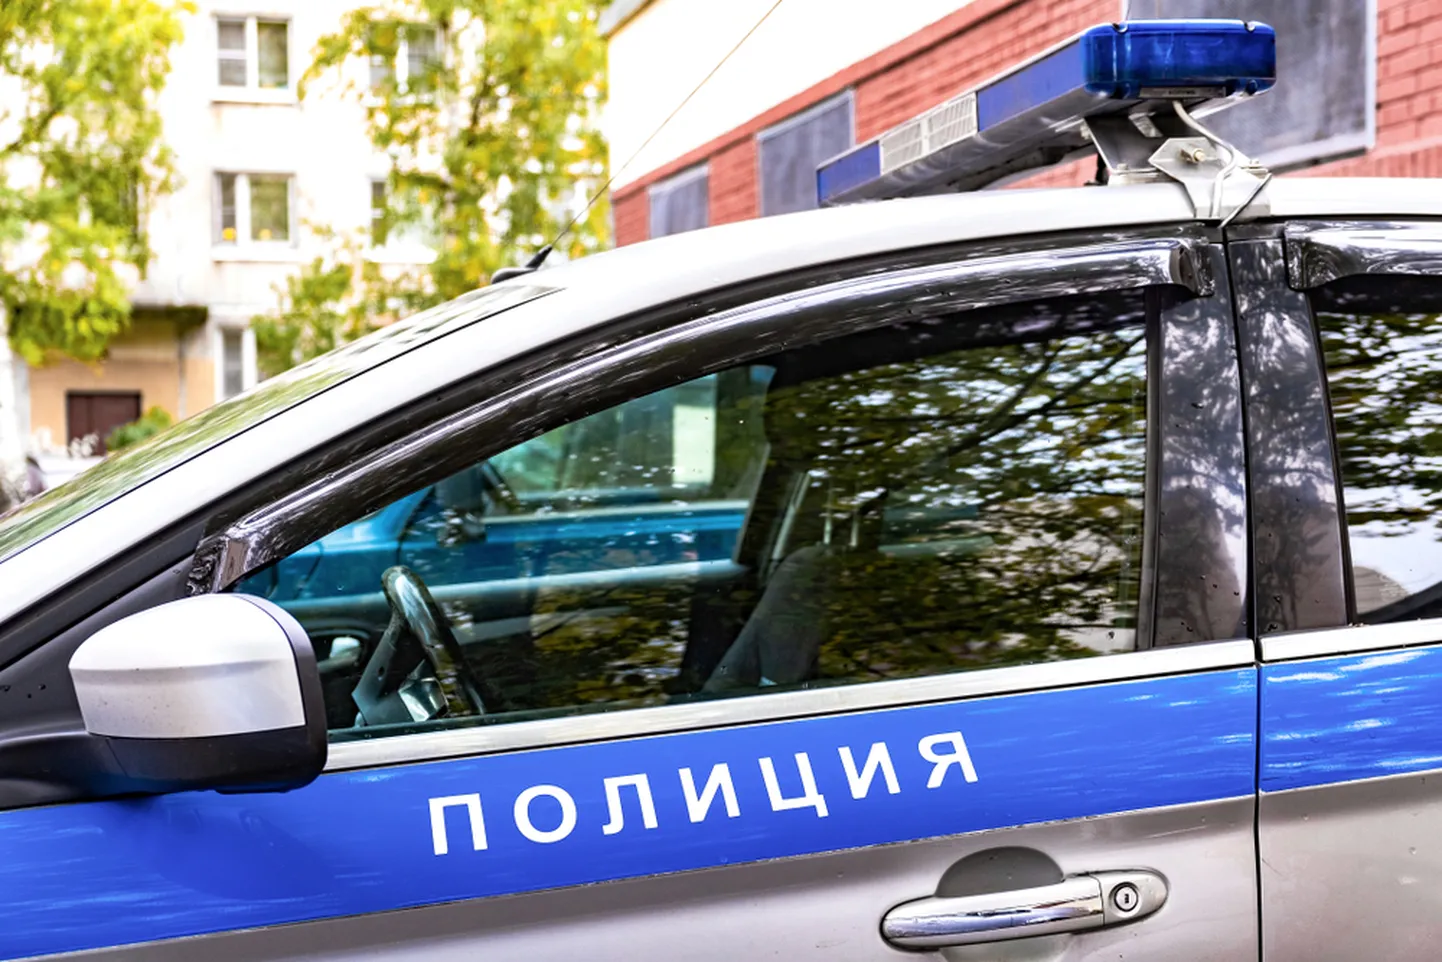 Venemaa politseipatrull